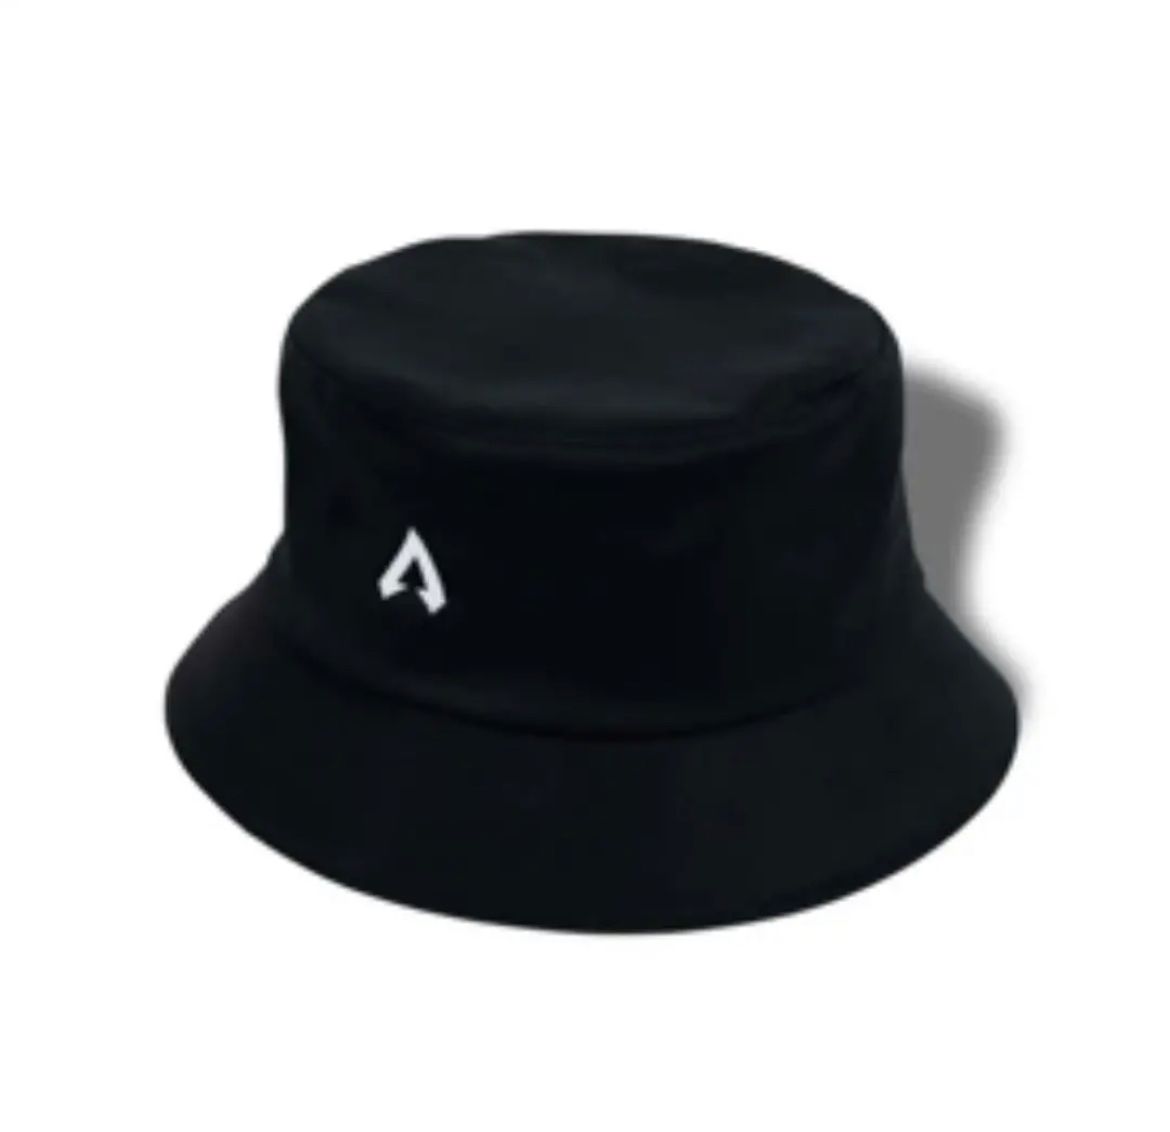 APEX LEGENDS × vaultroom LOGO HAT | Listing details